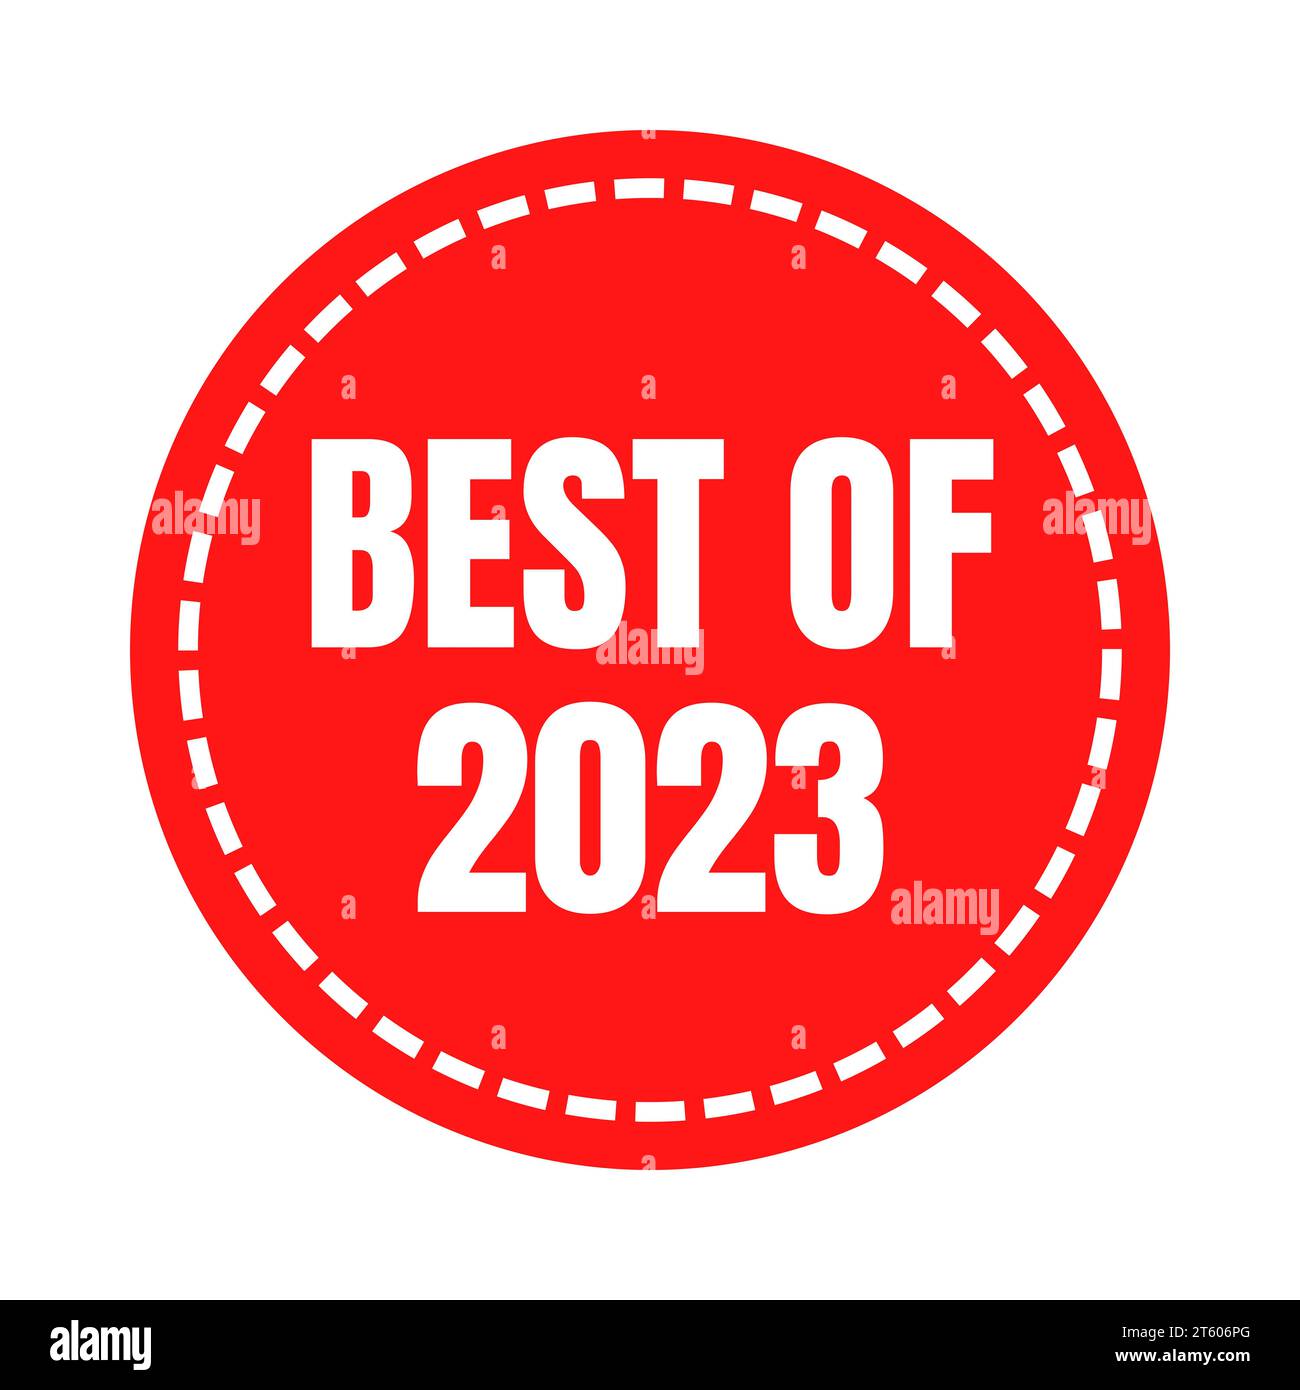 Best of 2023 symbol icon Stock Photo